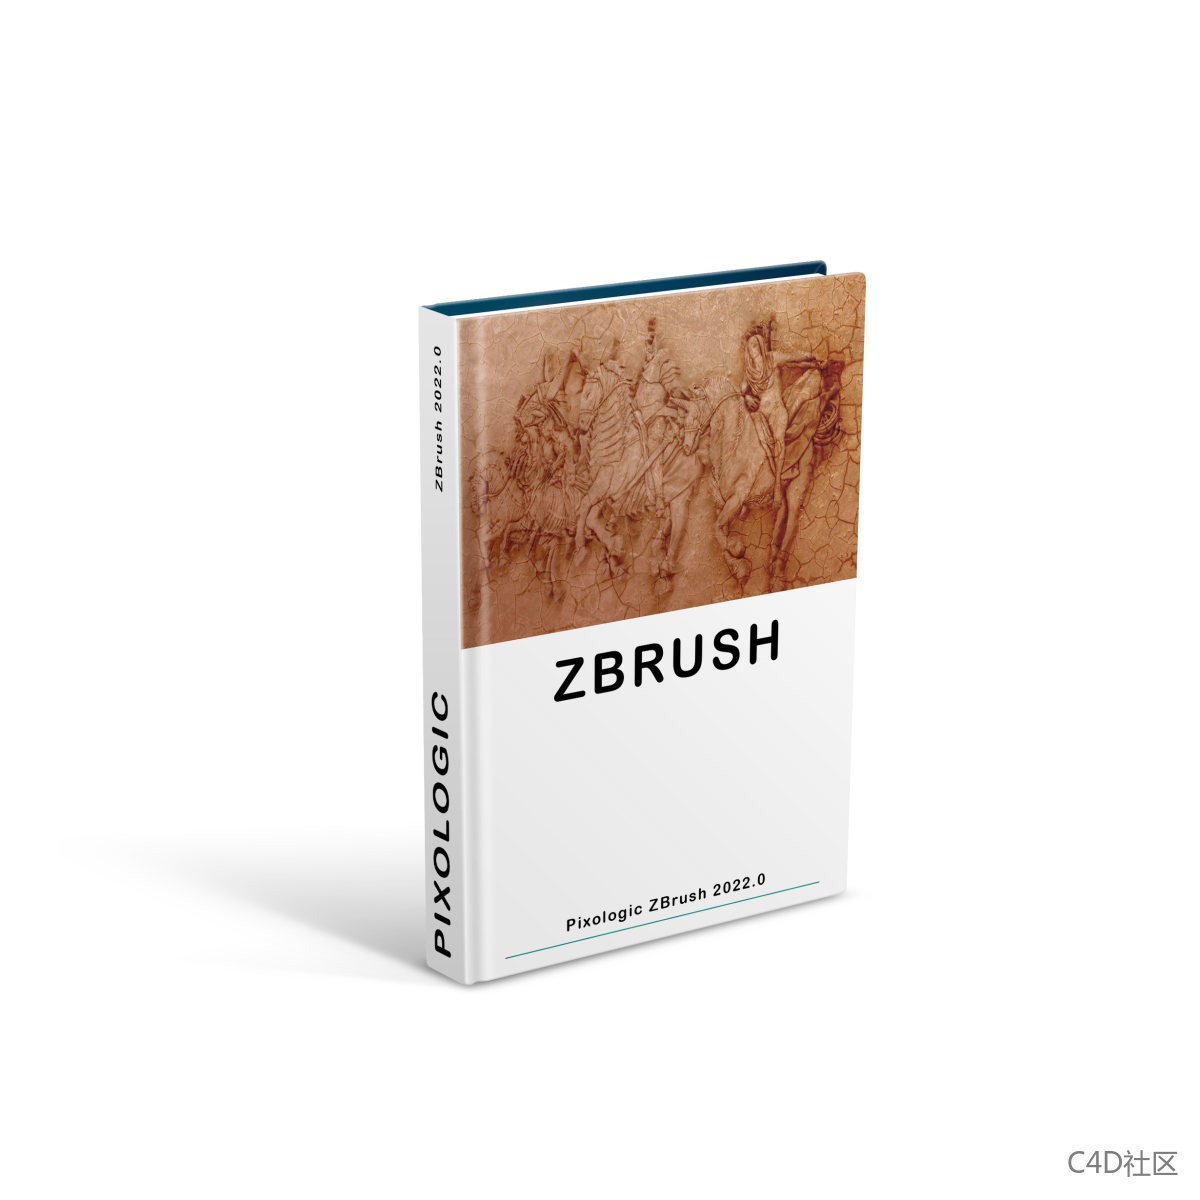 Pixologic ZBrush 2022.0.5 Crack software破解版